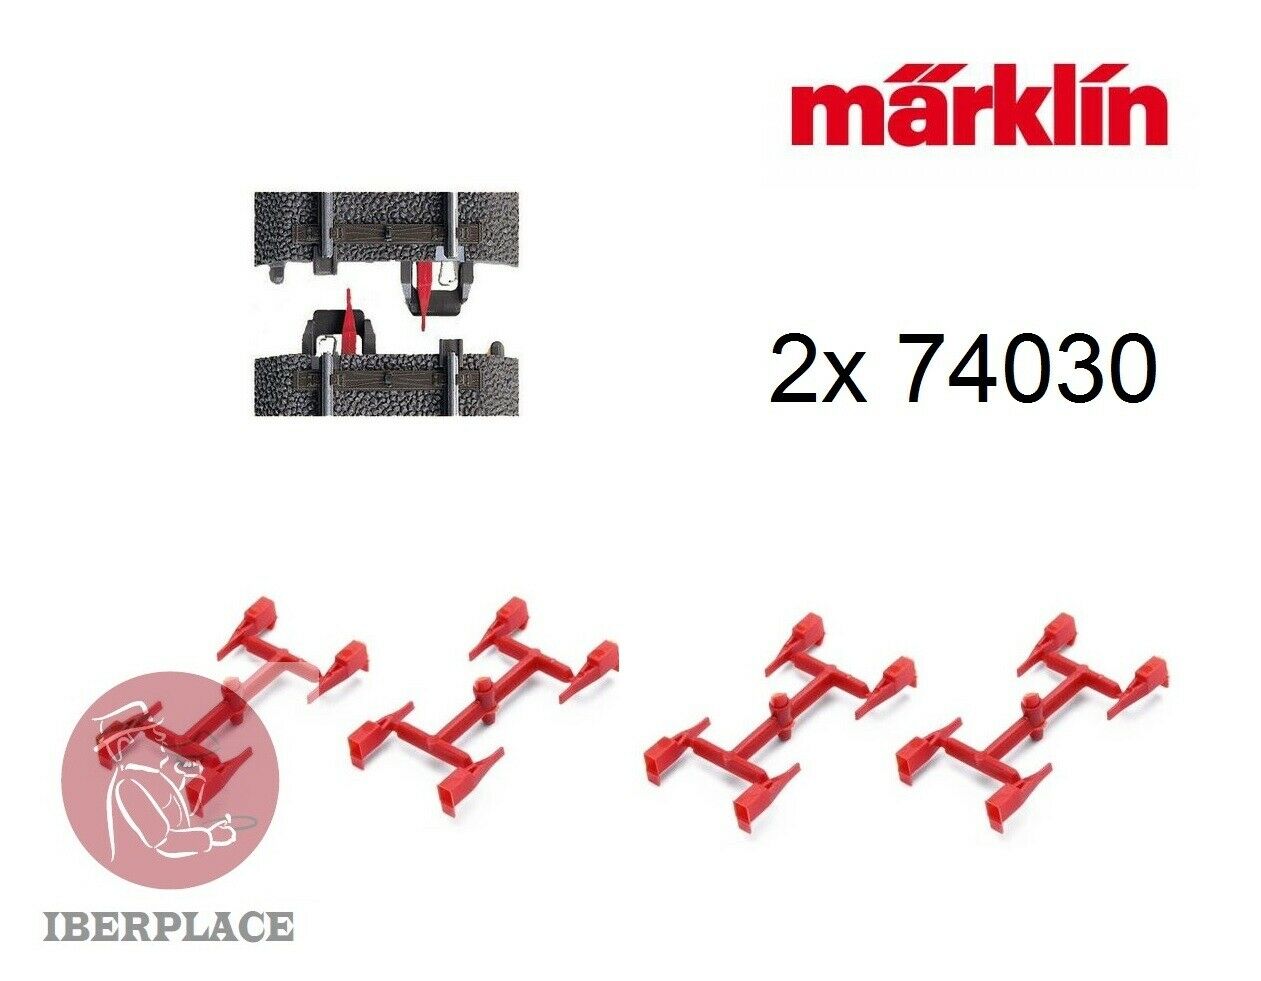 2x Märklin 74030 (16) H0 escala 1:87 AC vias C Aislamiento de conductor central